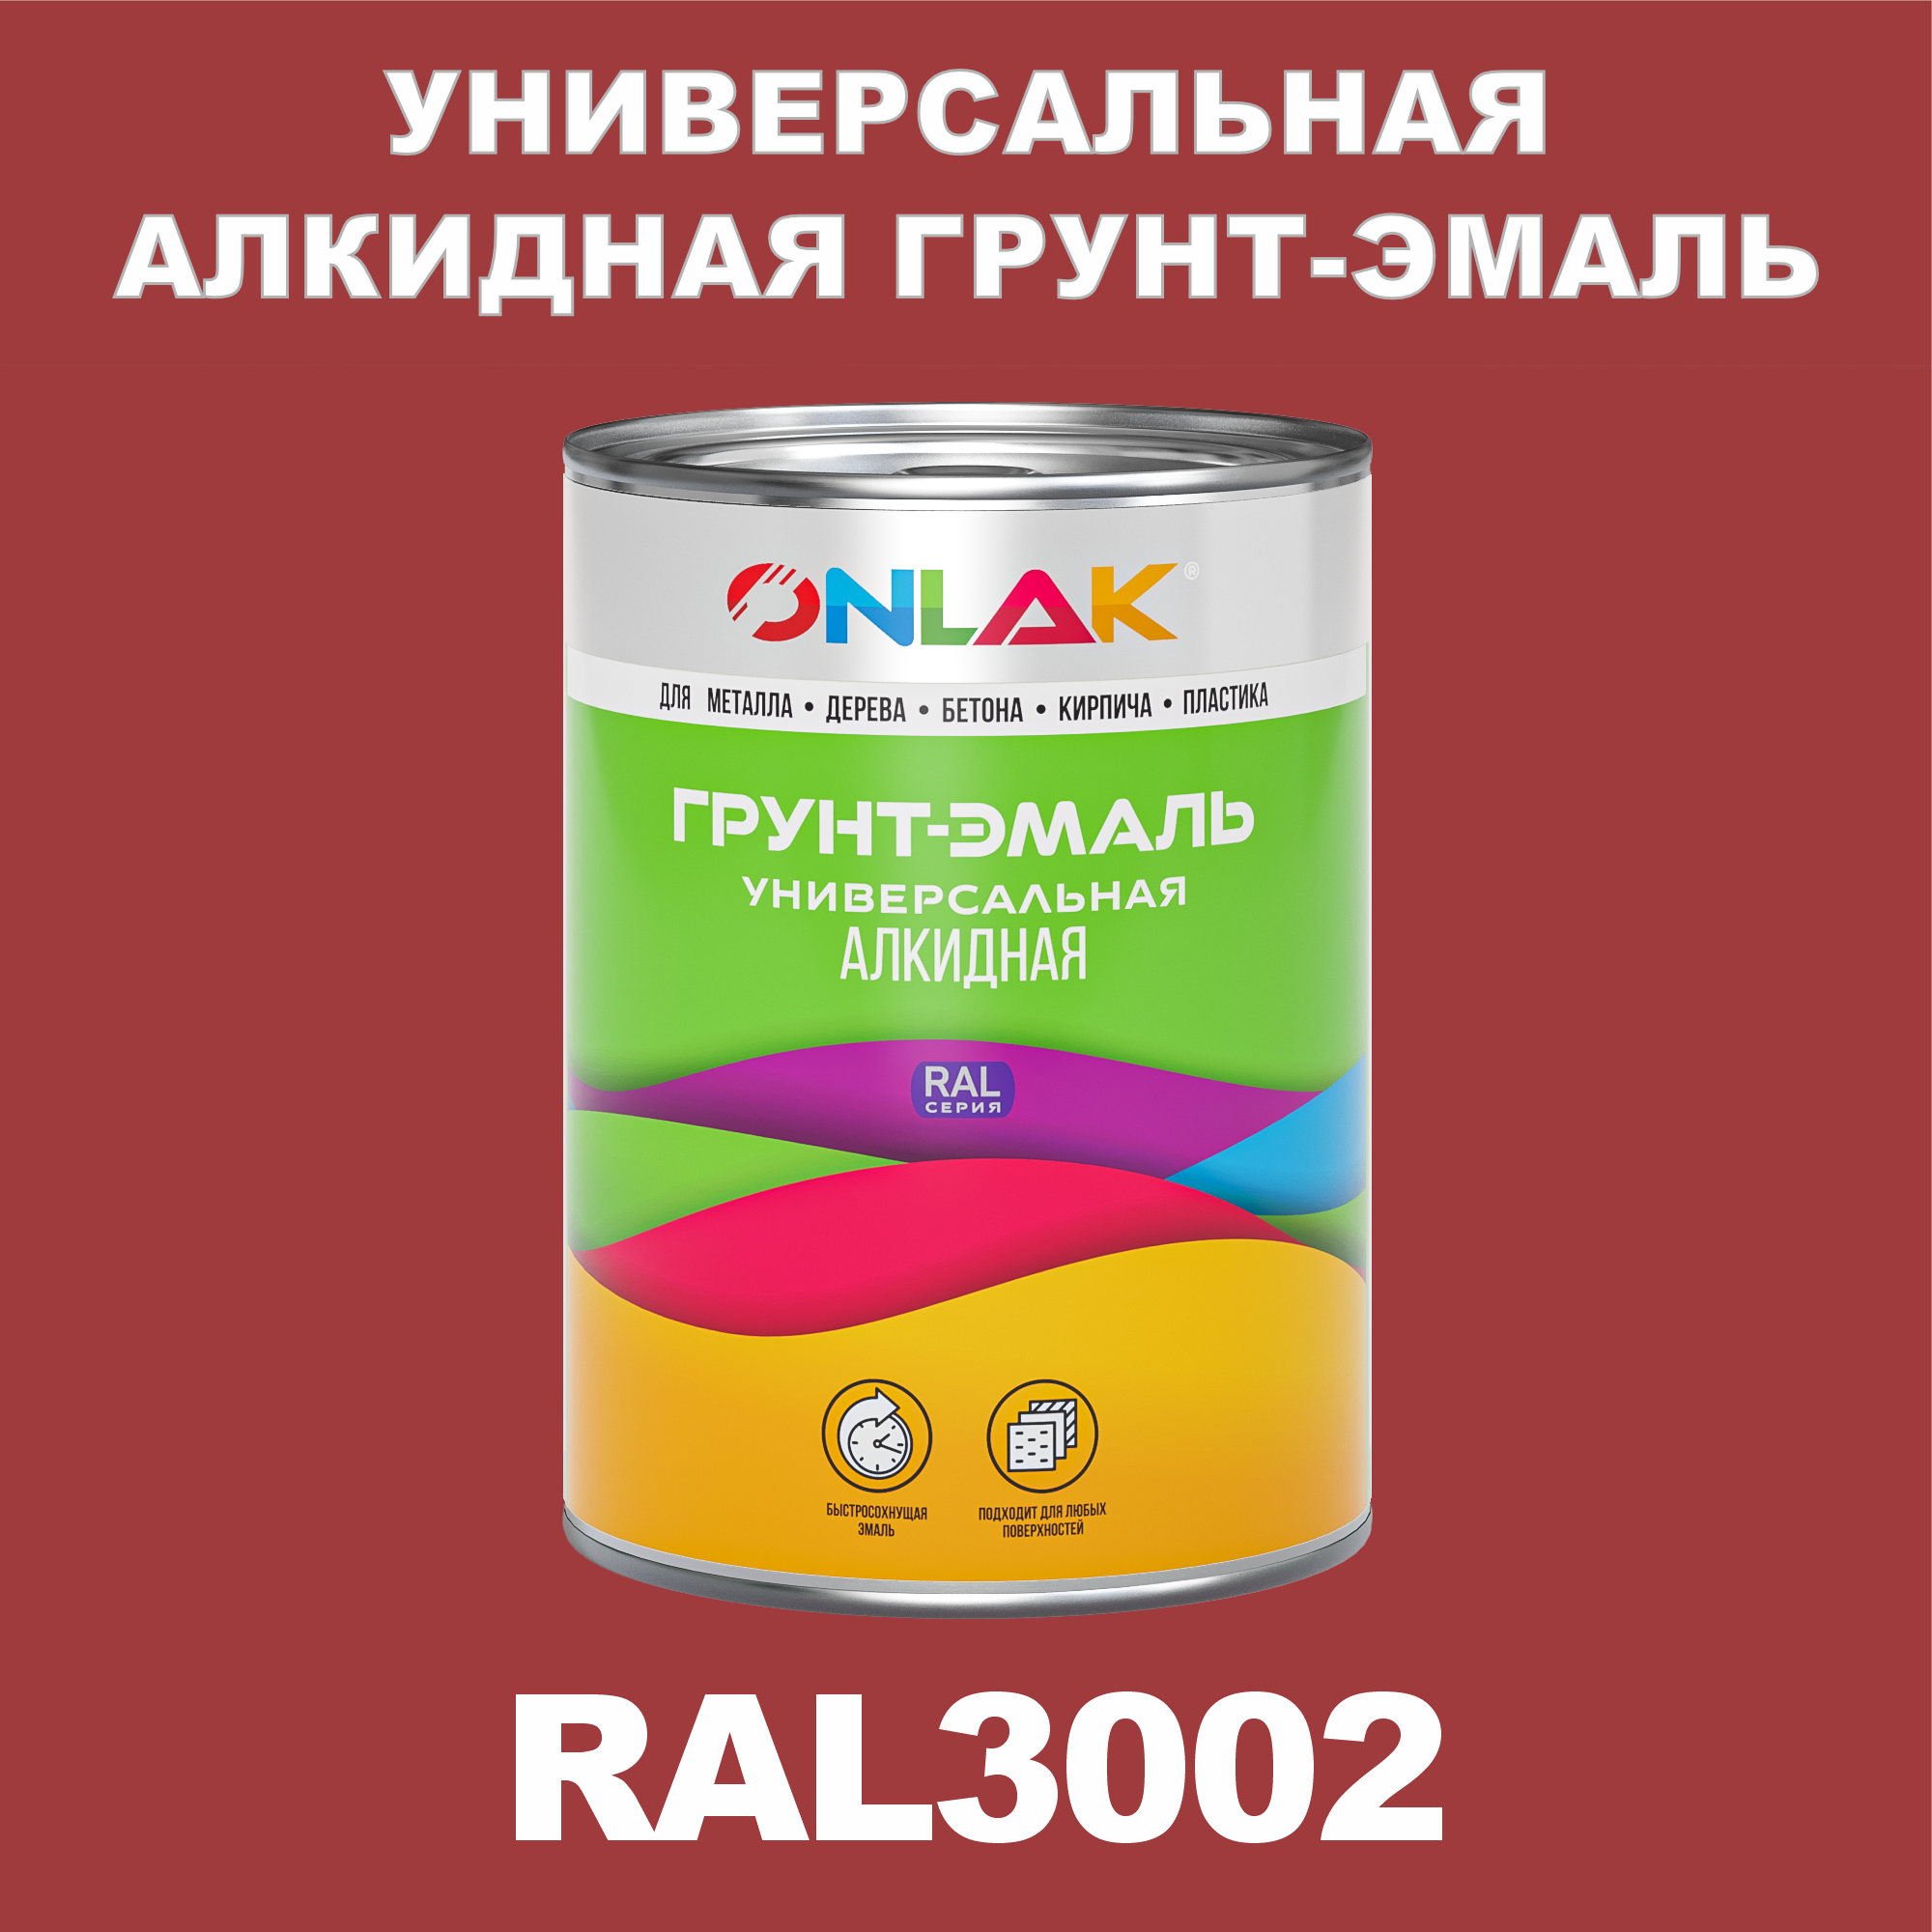 Грунт-эмаль ONLAK 1К RAL3002 антикоррозионная алкидная по металлу по ржавчине 1 кг